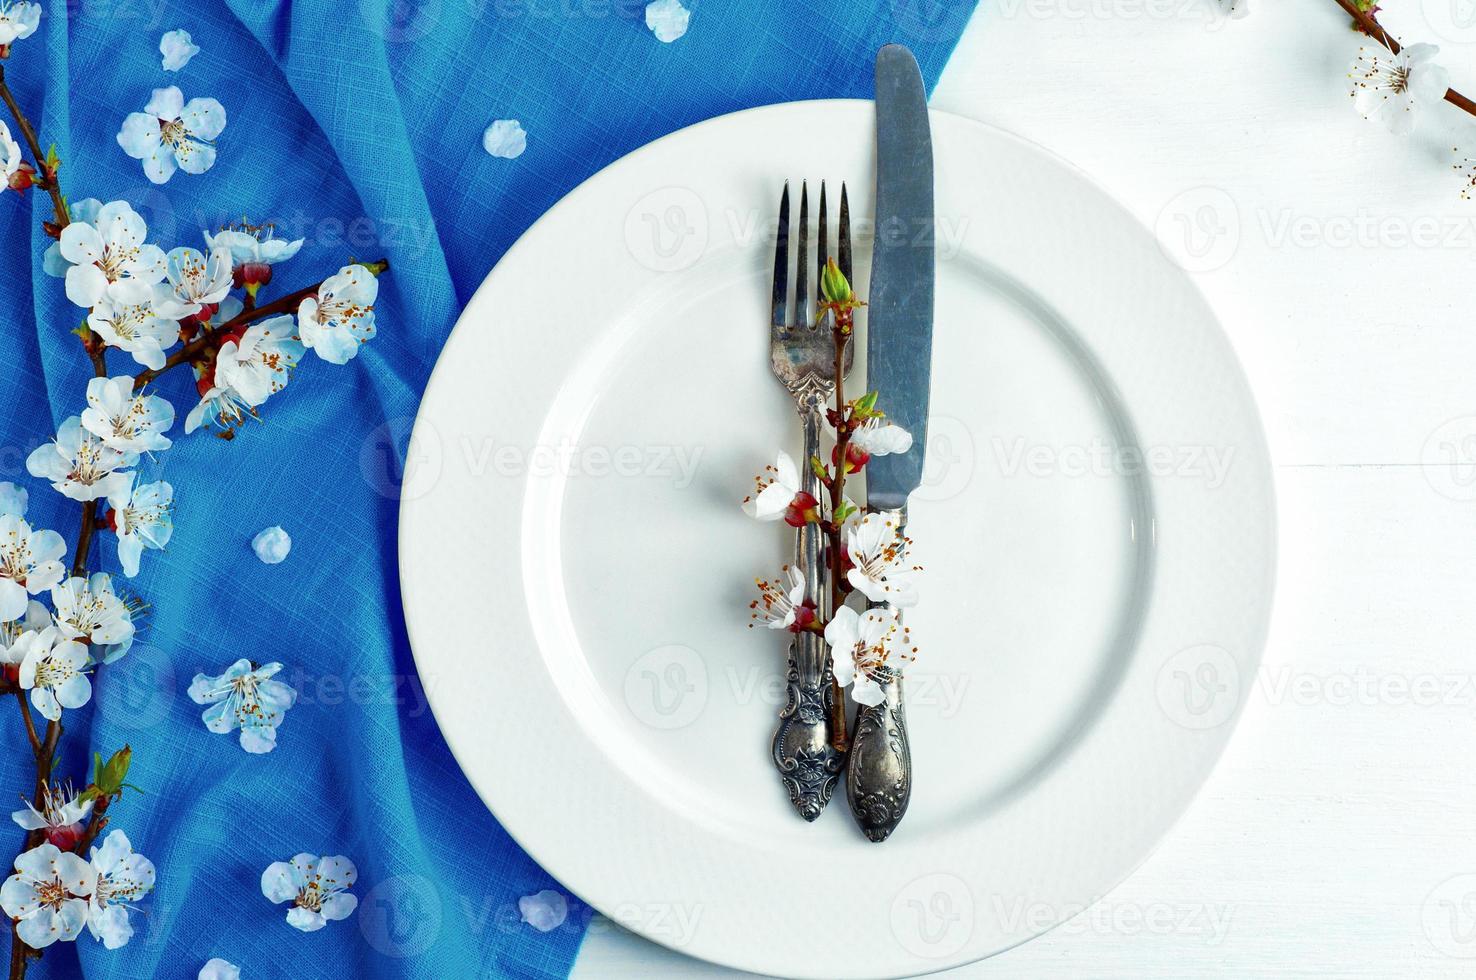 plato blanco vacío con tenedor y cuchillo foto